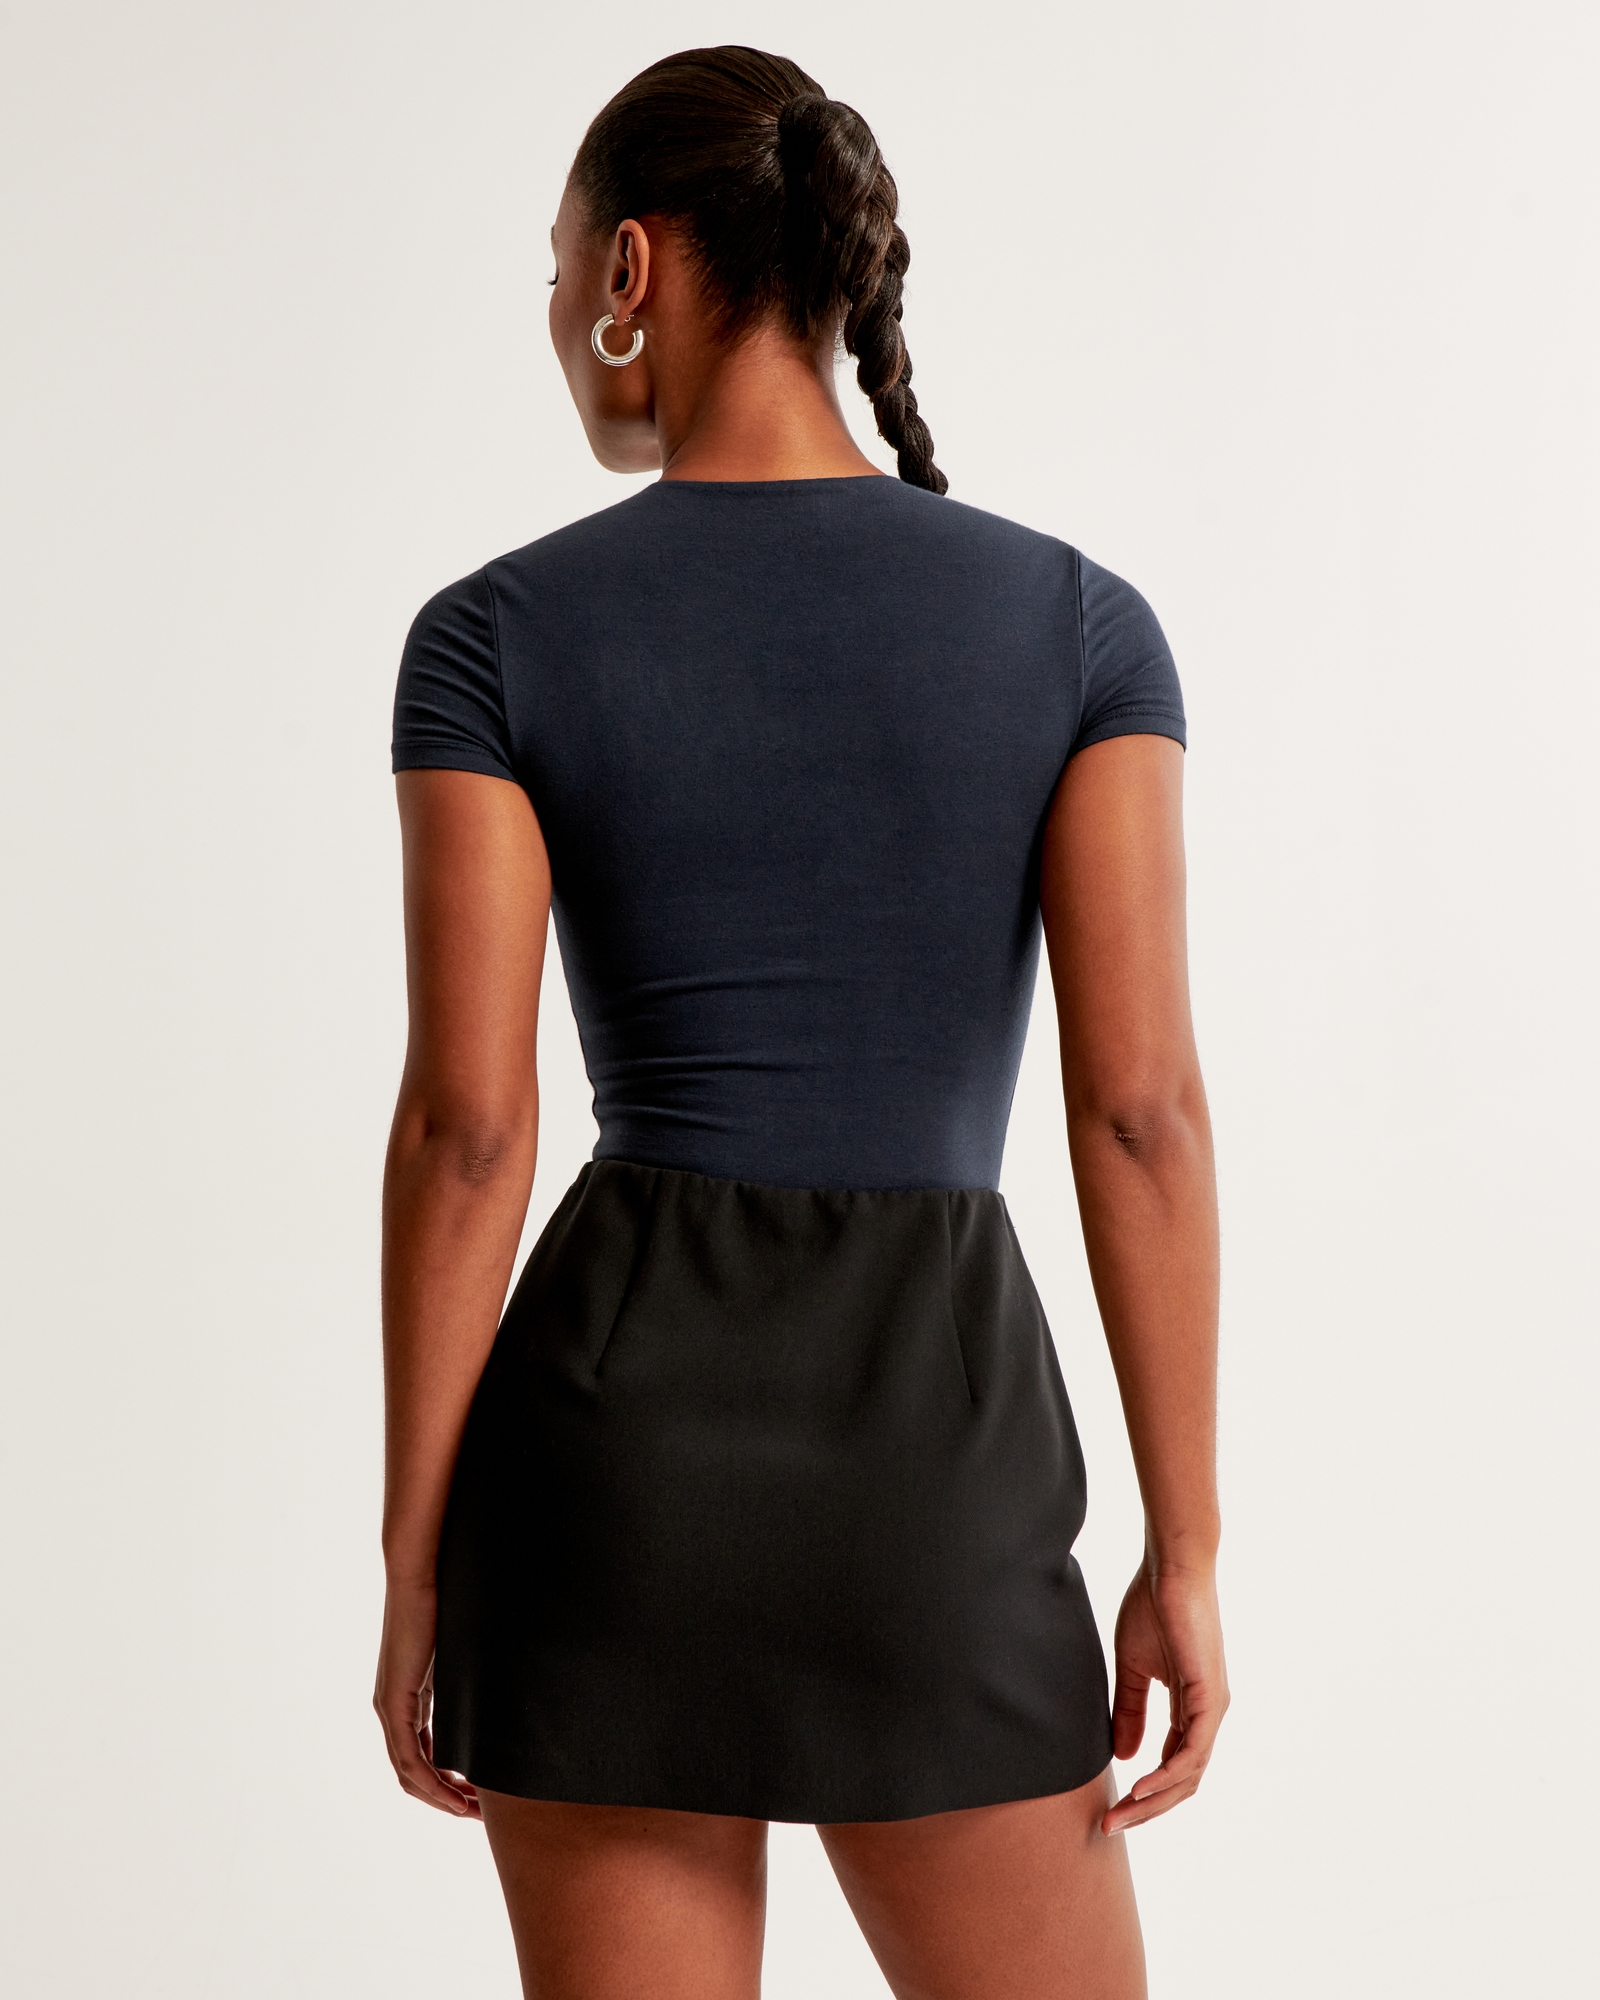 Round Neck Short T Shirt Sleeve Bodysuit – KesleyBoutique